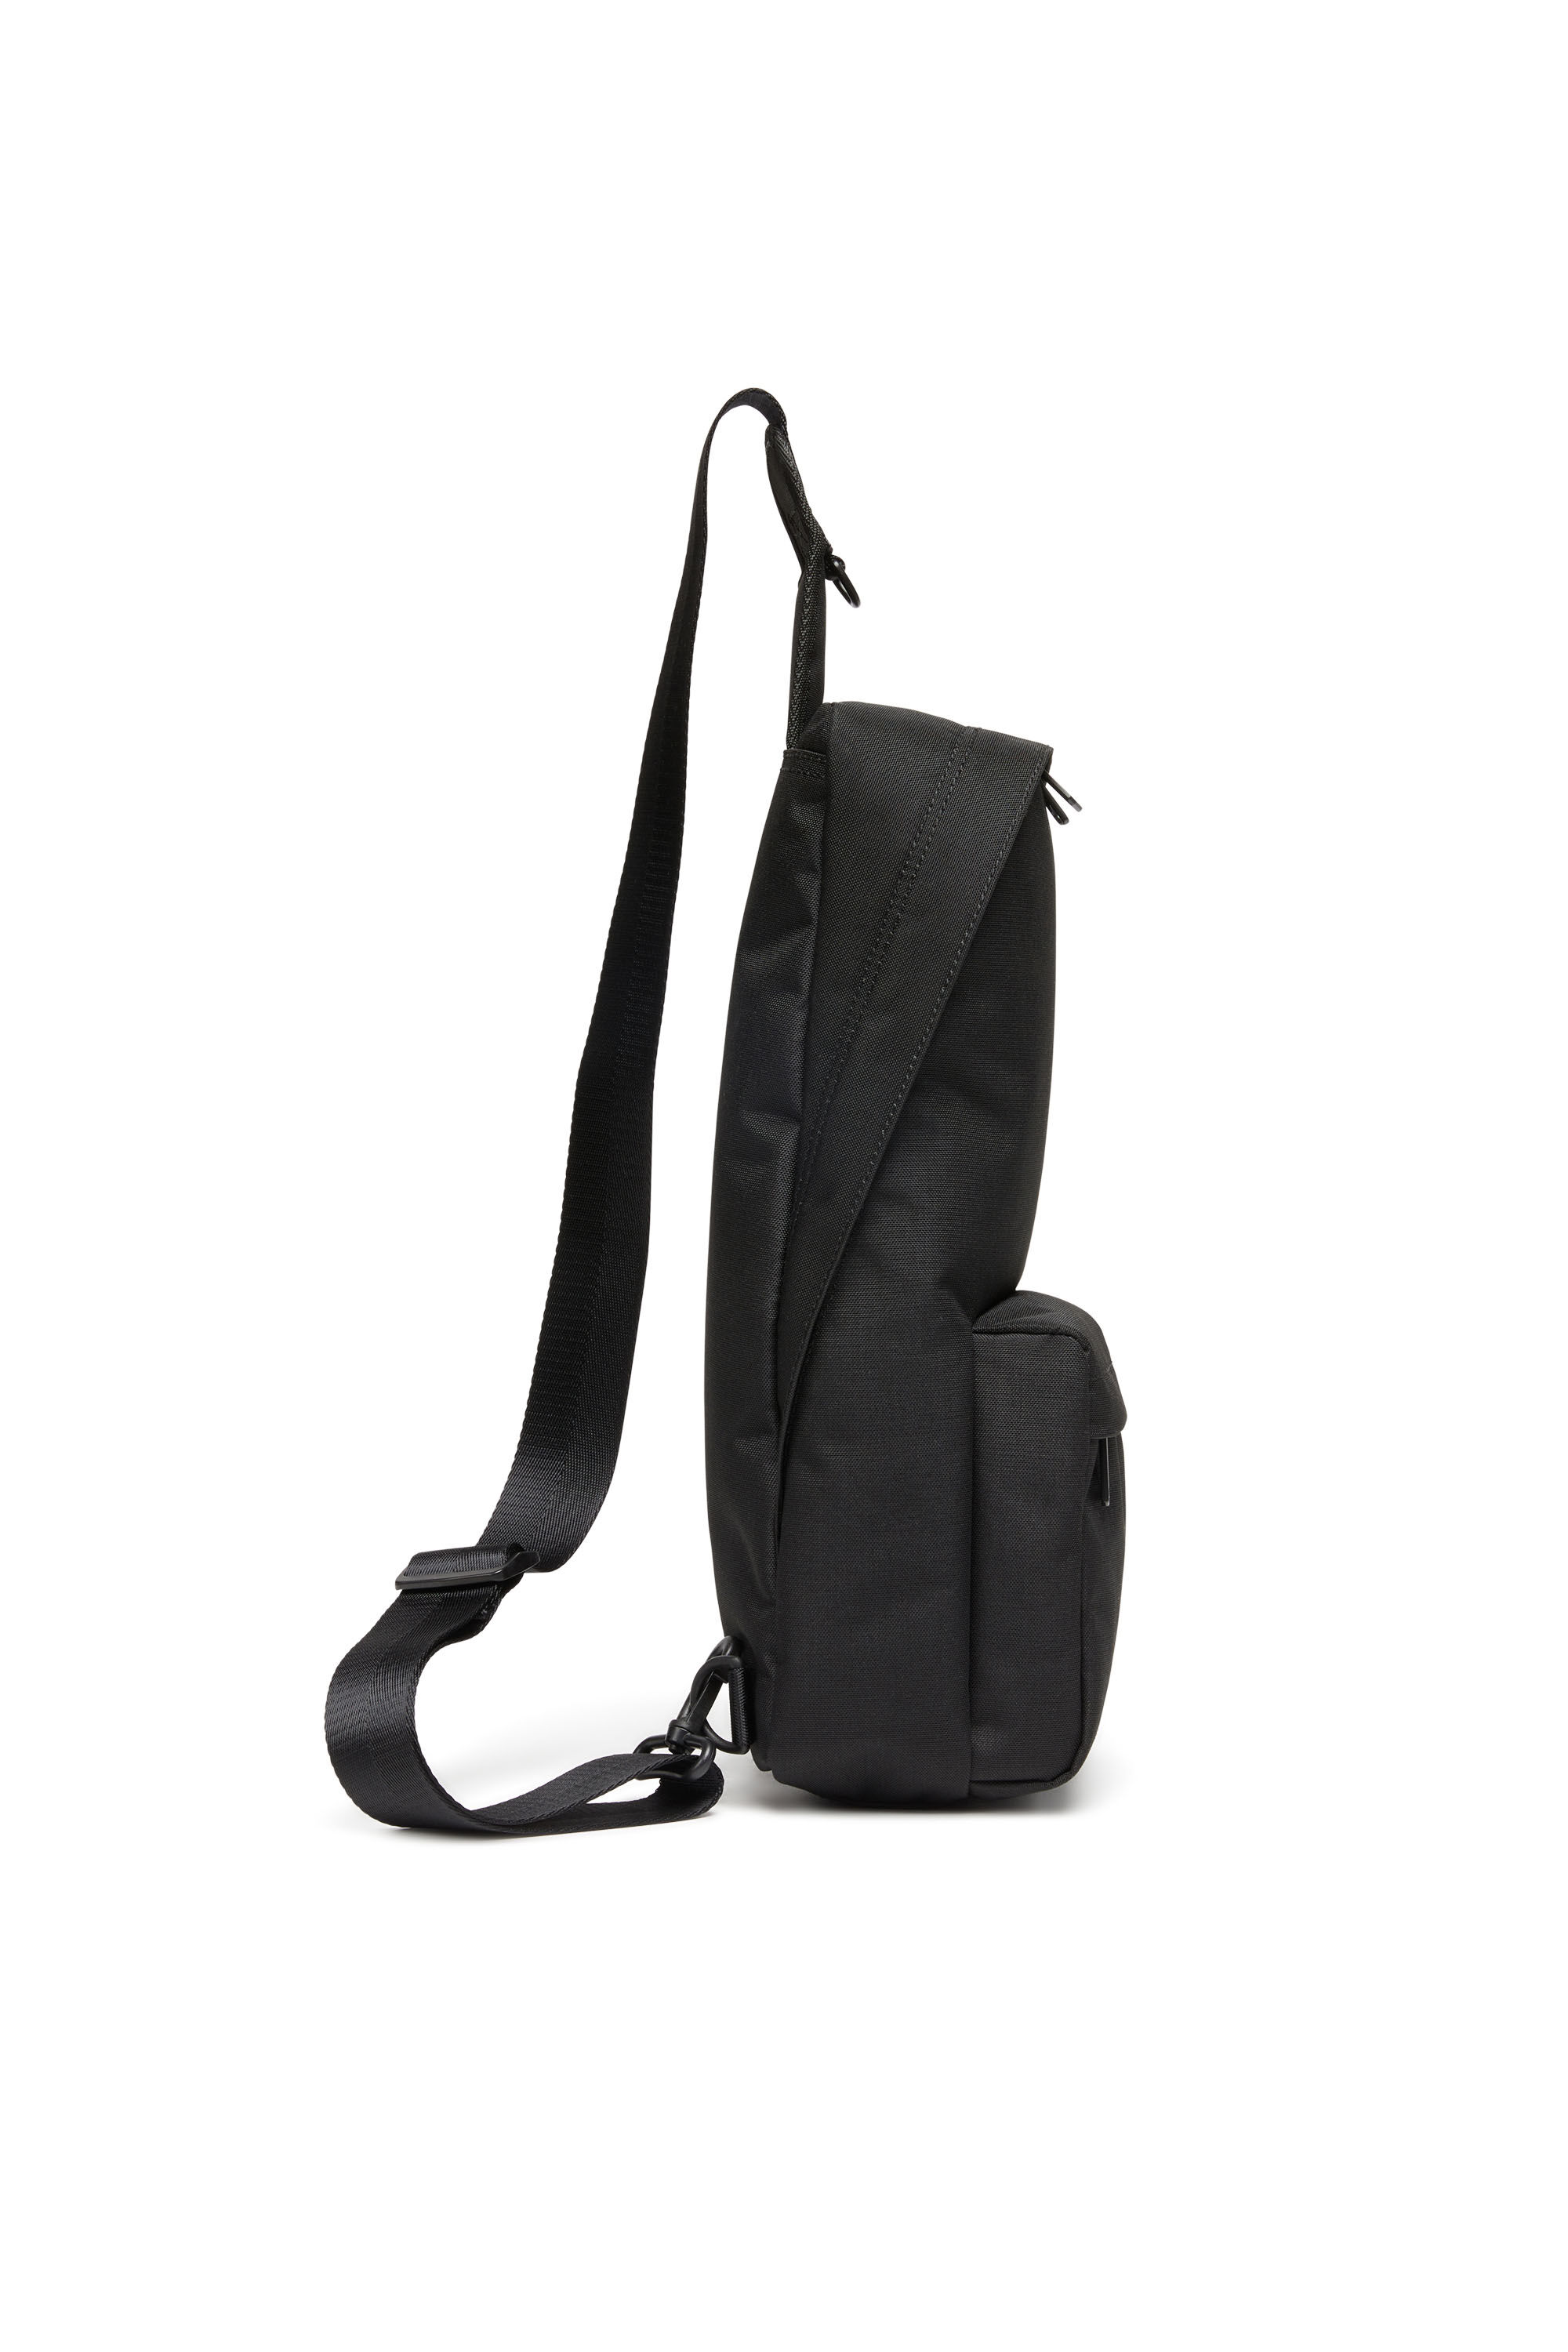 D-BSC SLING BAG X D-Bsc Sling Bag X - Sling backpack in heavy-duty